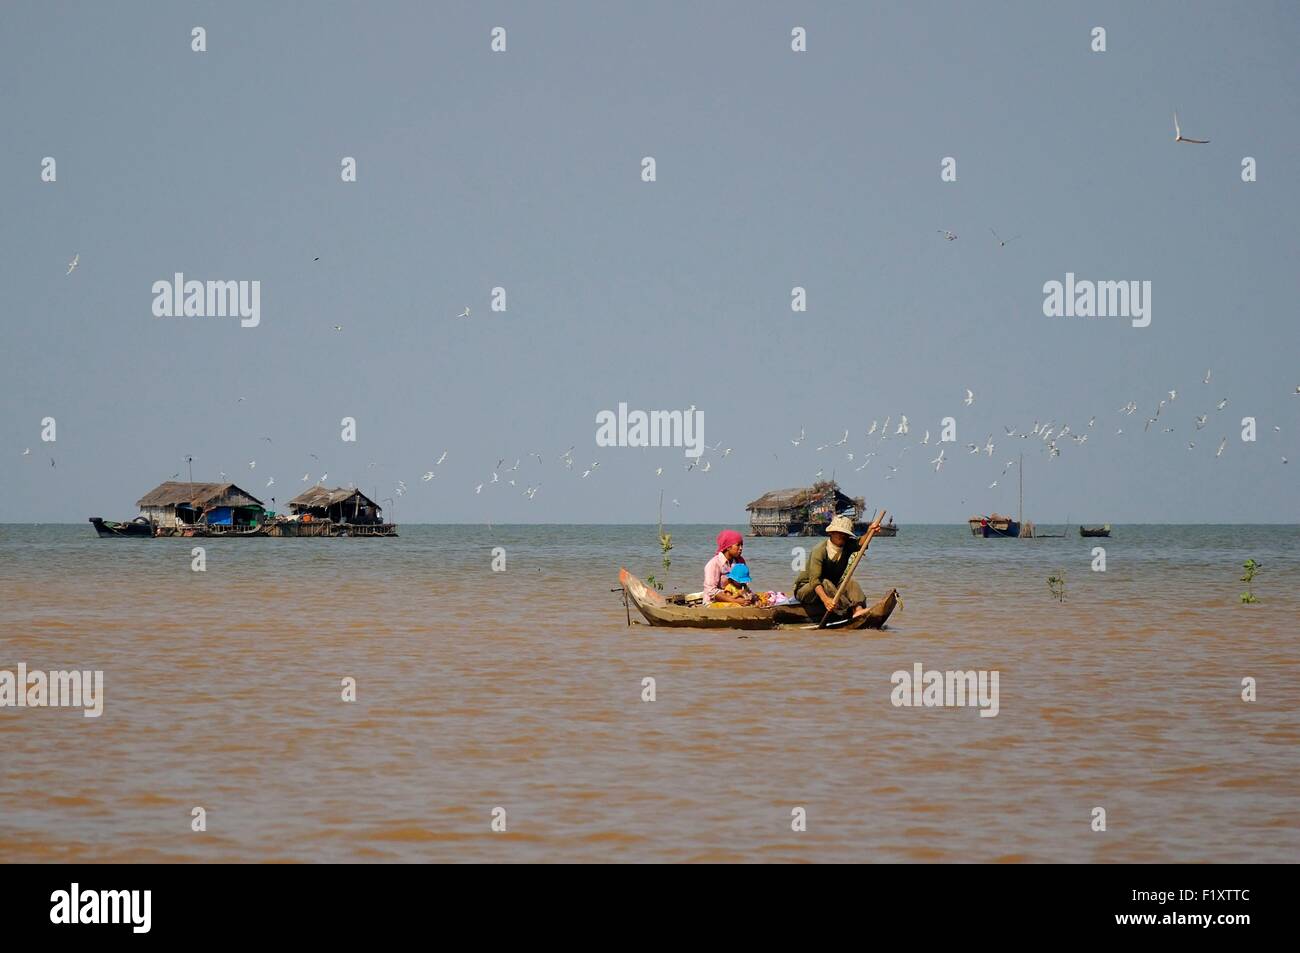 Le Cambodge, la province de Siem Reap, Kompong Khleang, Tonle Sap, village flottant sur le lac de Tonle Sap Banque D'Images